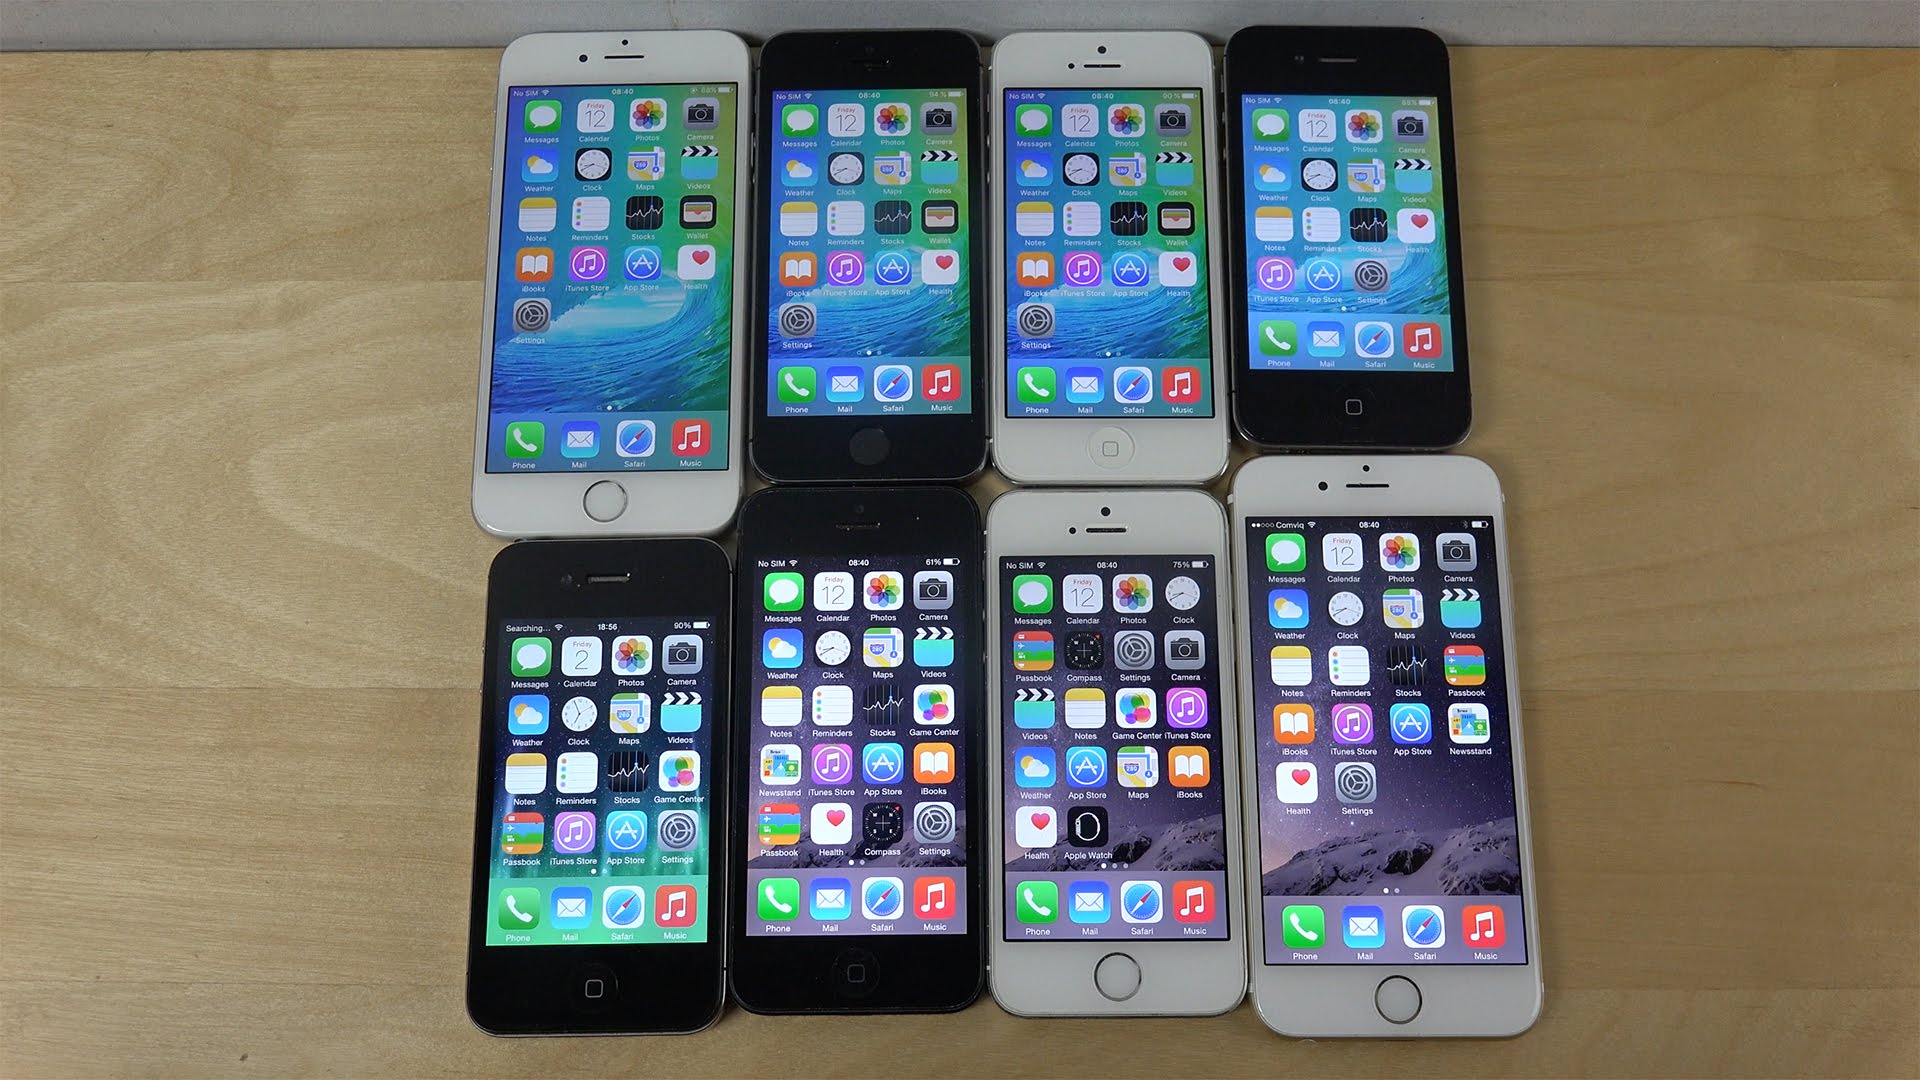 老款iPhone也能受益于iOS 9:续航时间延长1小